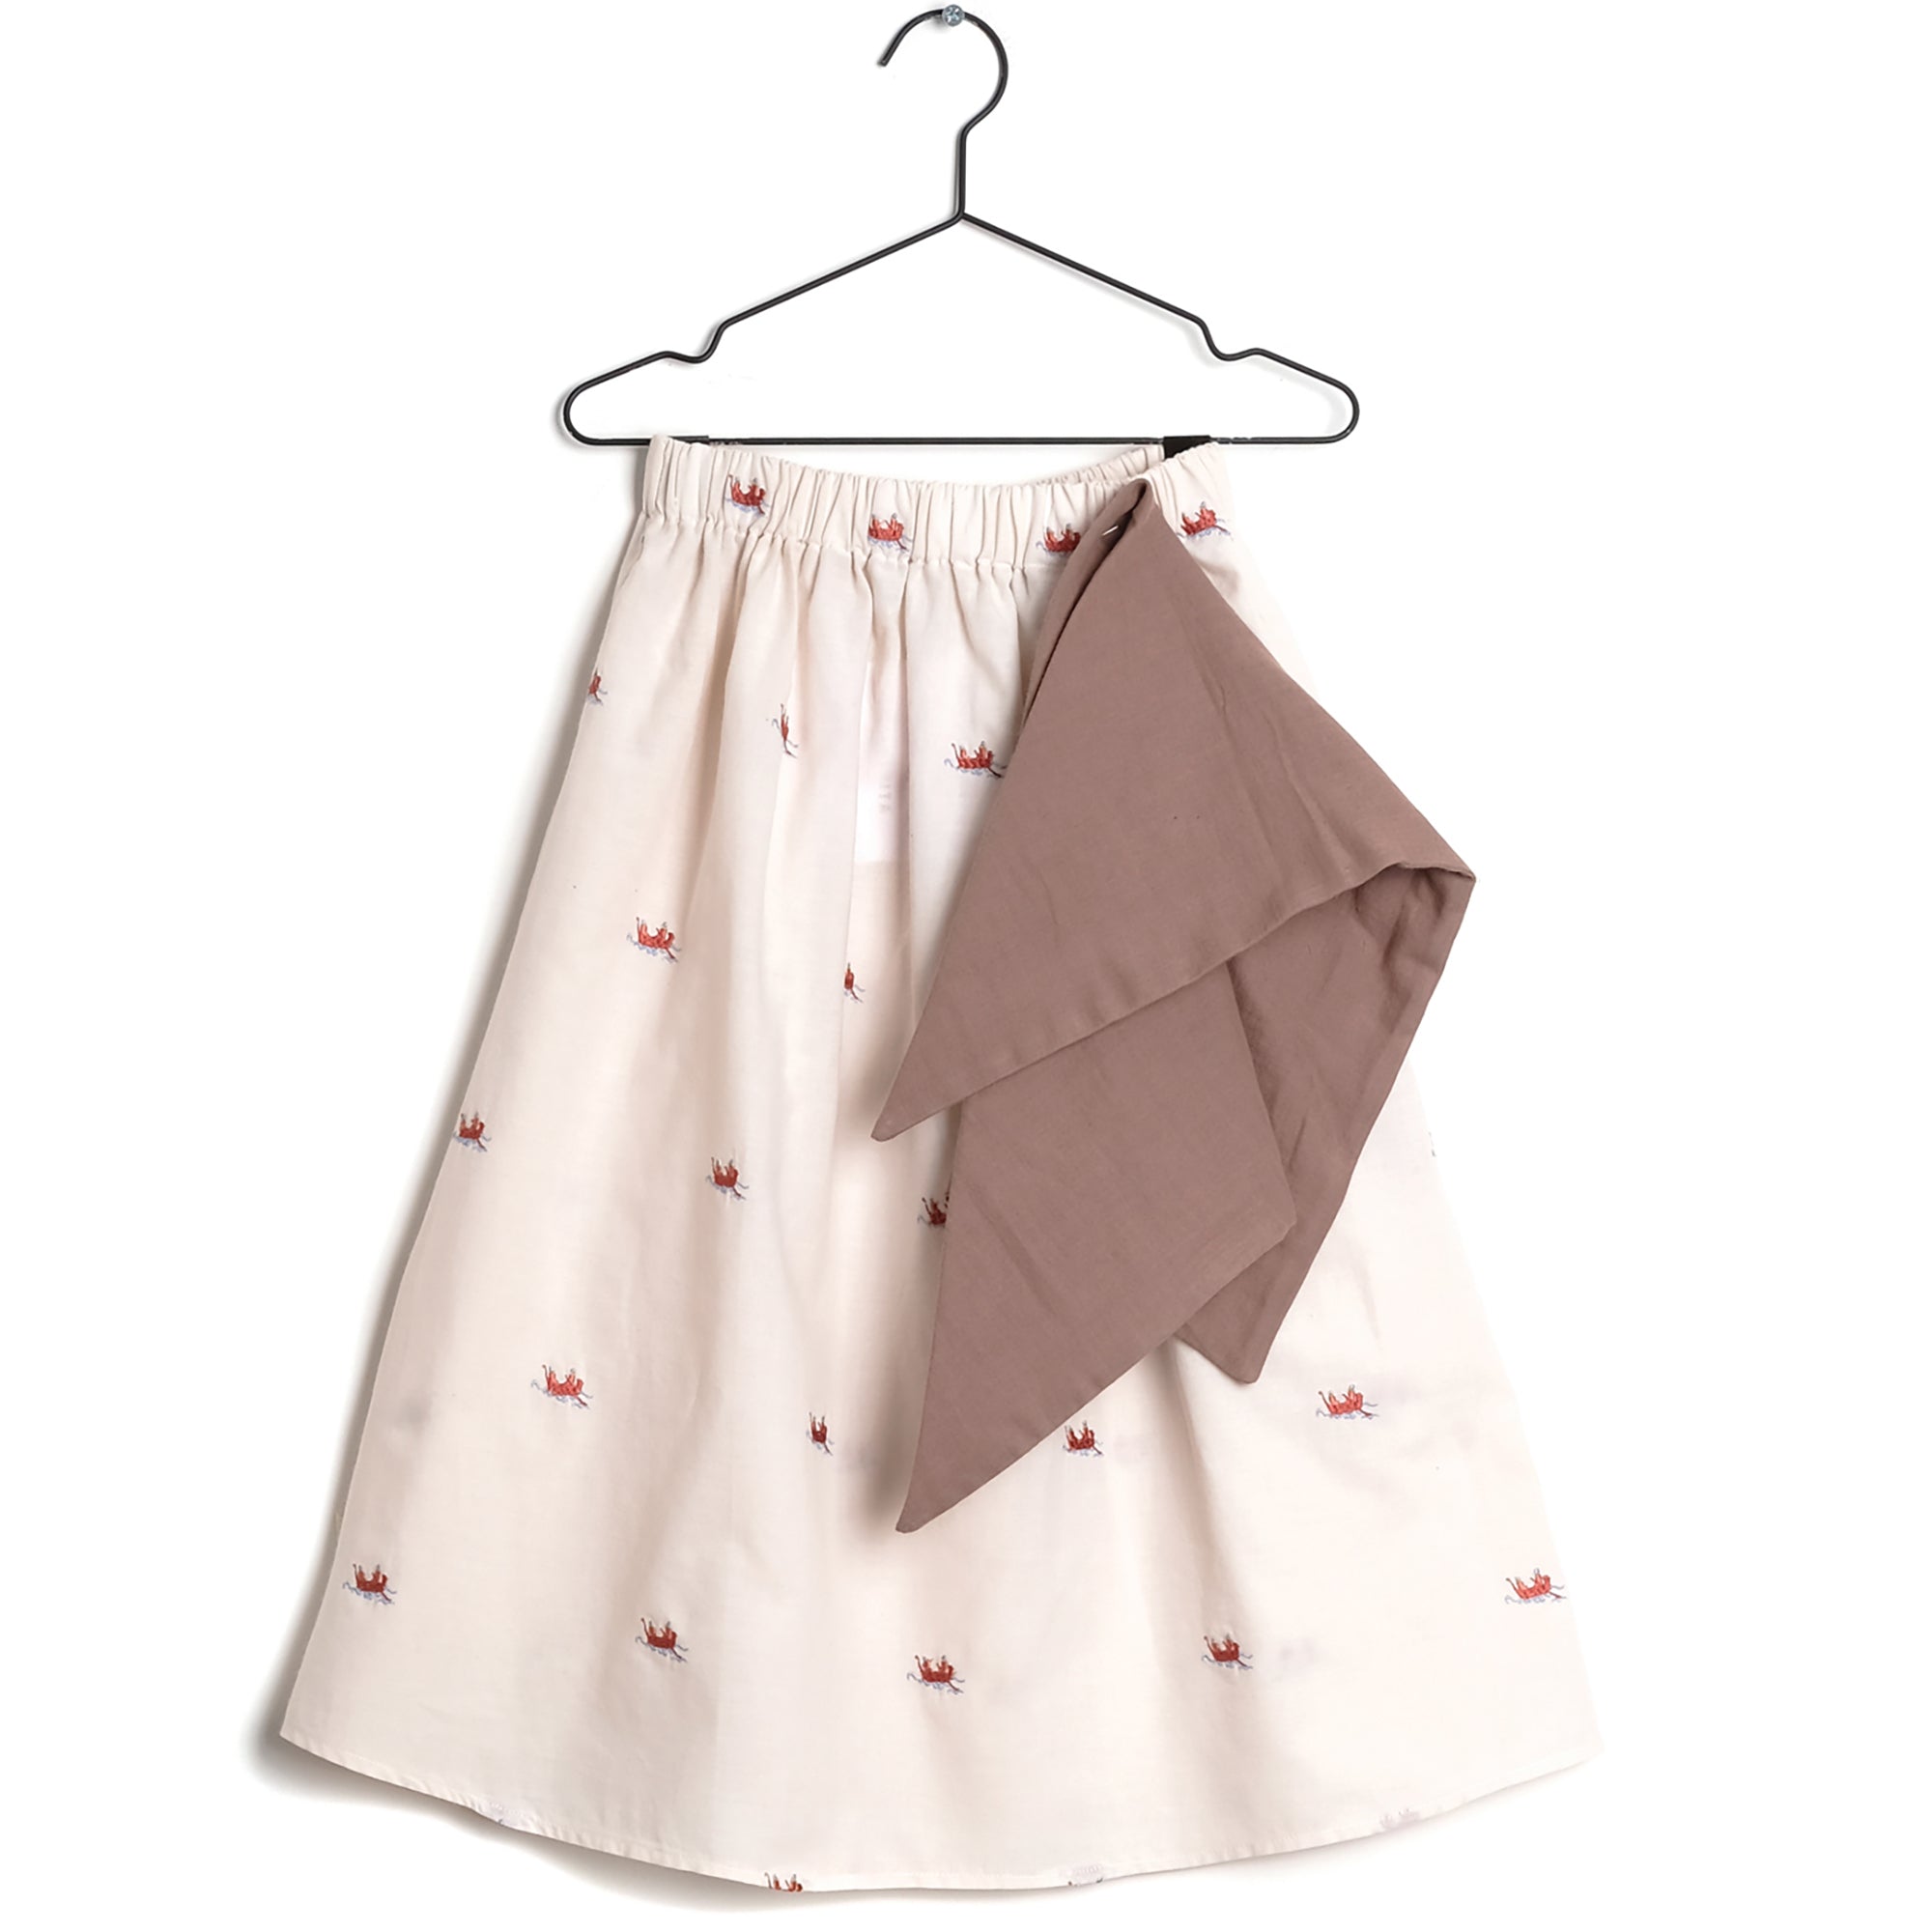 Girls Light Pink Cotton Skirt